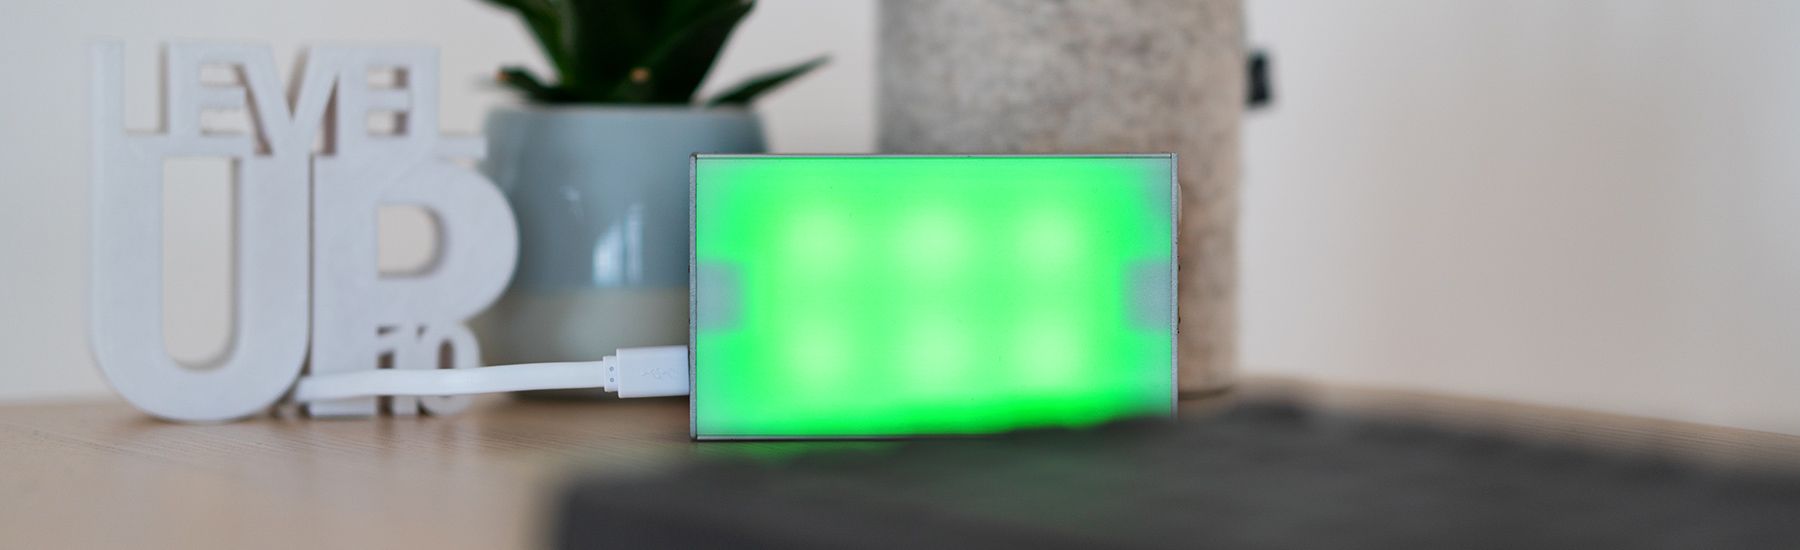 CO2-Ampel steht auf dem Schreibtisch und leuchtet grün.